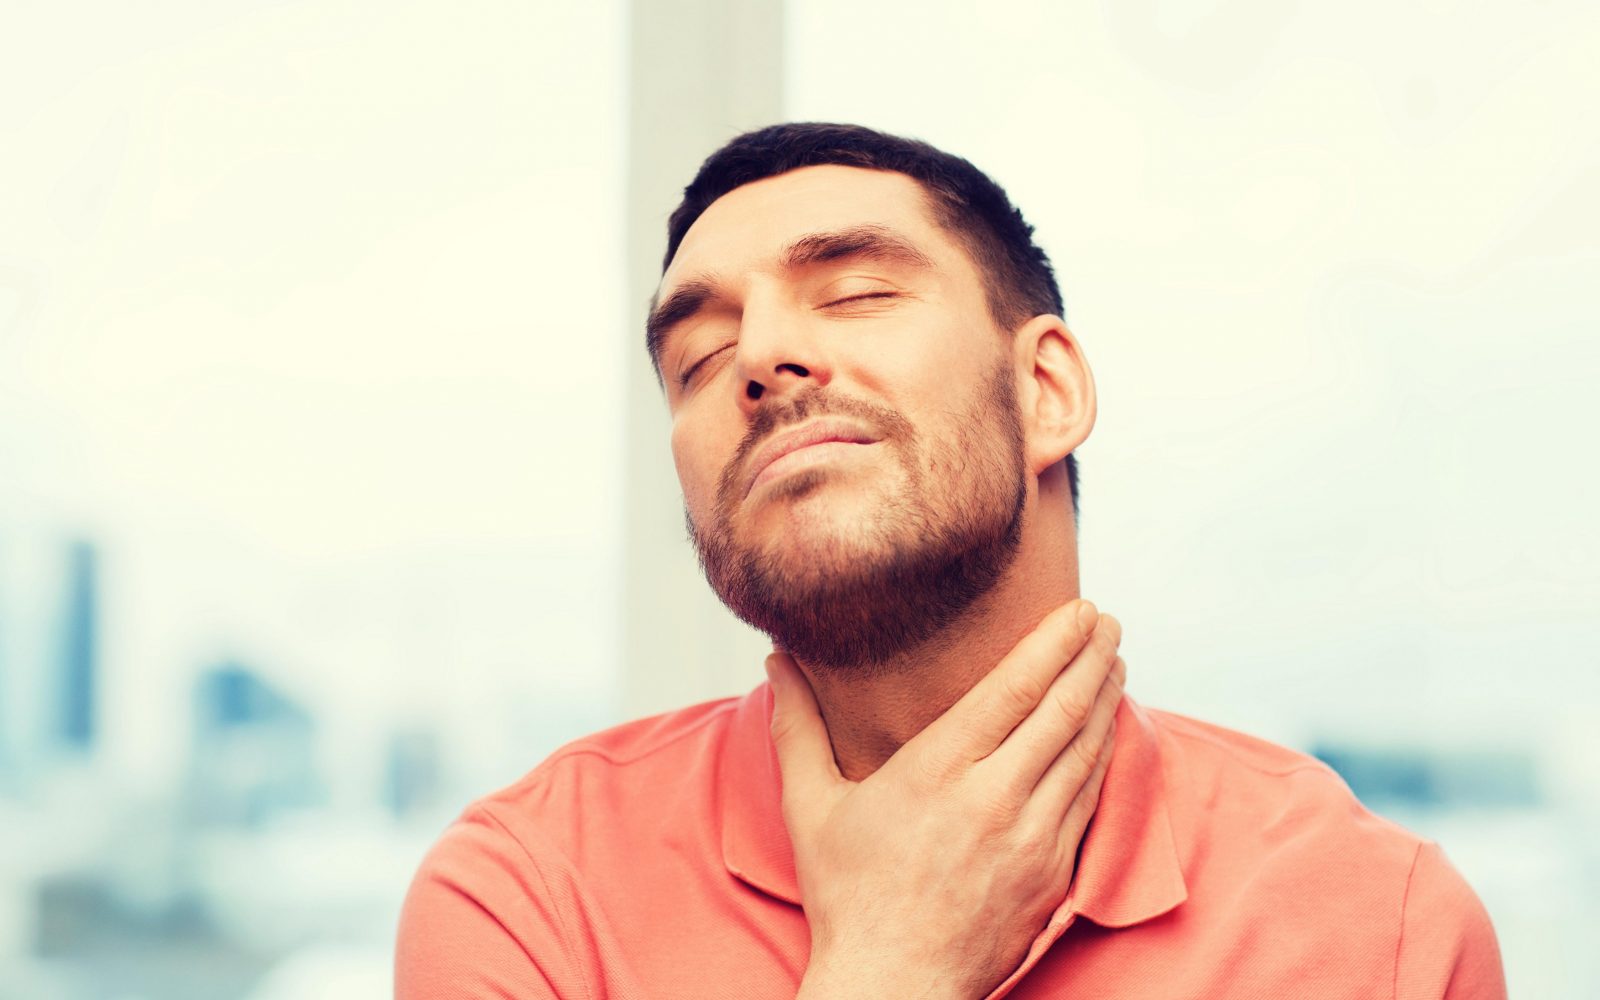 Fotografija prikazuje moškega, ki drži roko na grlu in izraža nelagodje, kar nakazuje na bolečine v grlu. Moški ima zaprte oči in rahlo namrščen obraz, kar dodatno poudarja občutek bolečine. Slika je idealna za članke o simptomih prehlada, angine, okužbah grla ali zdravstvenih nasvetih za lajšanje bolečin v grlu. Uporabna je tudi za medicinske bloge, spletne strani zdravstvenih klinik in publikacije o zdravju.